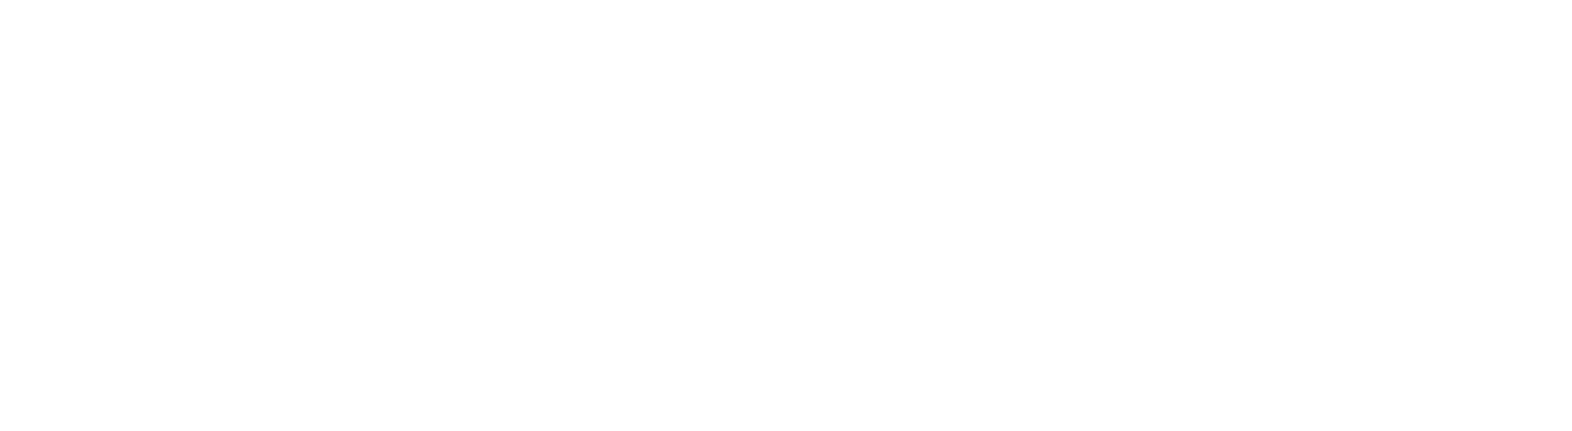 Alkaline Water Company Logo groß für dunkle Hintergründe (transparentes PNG)